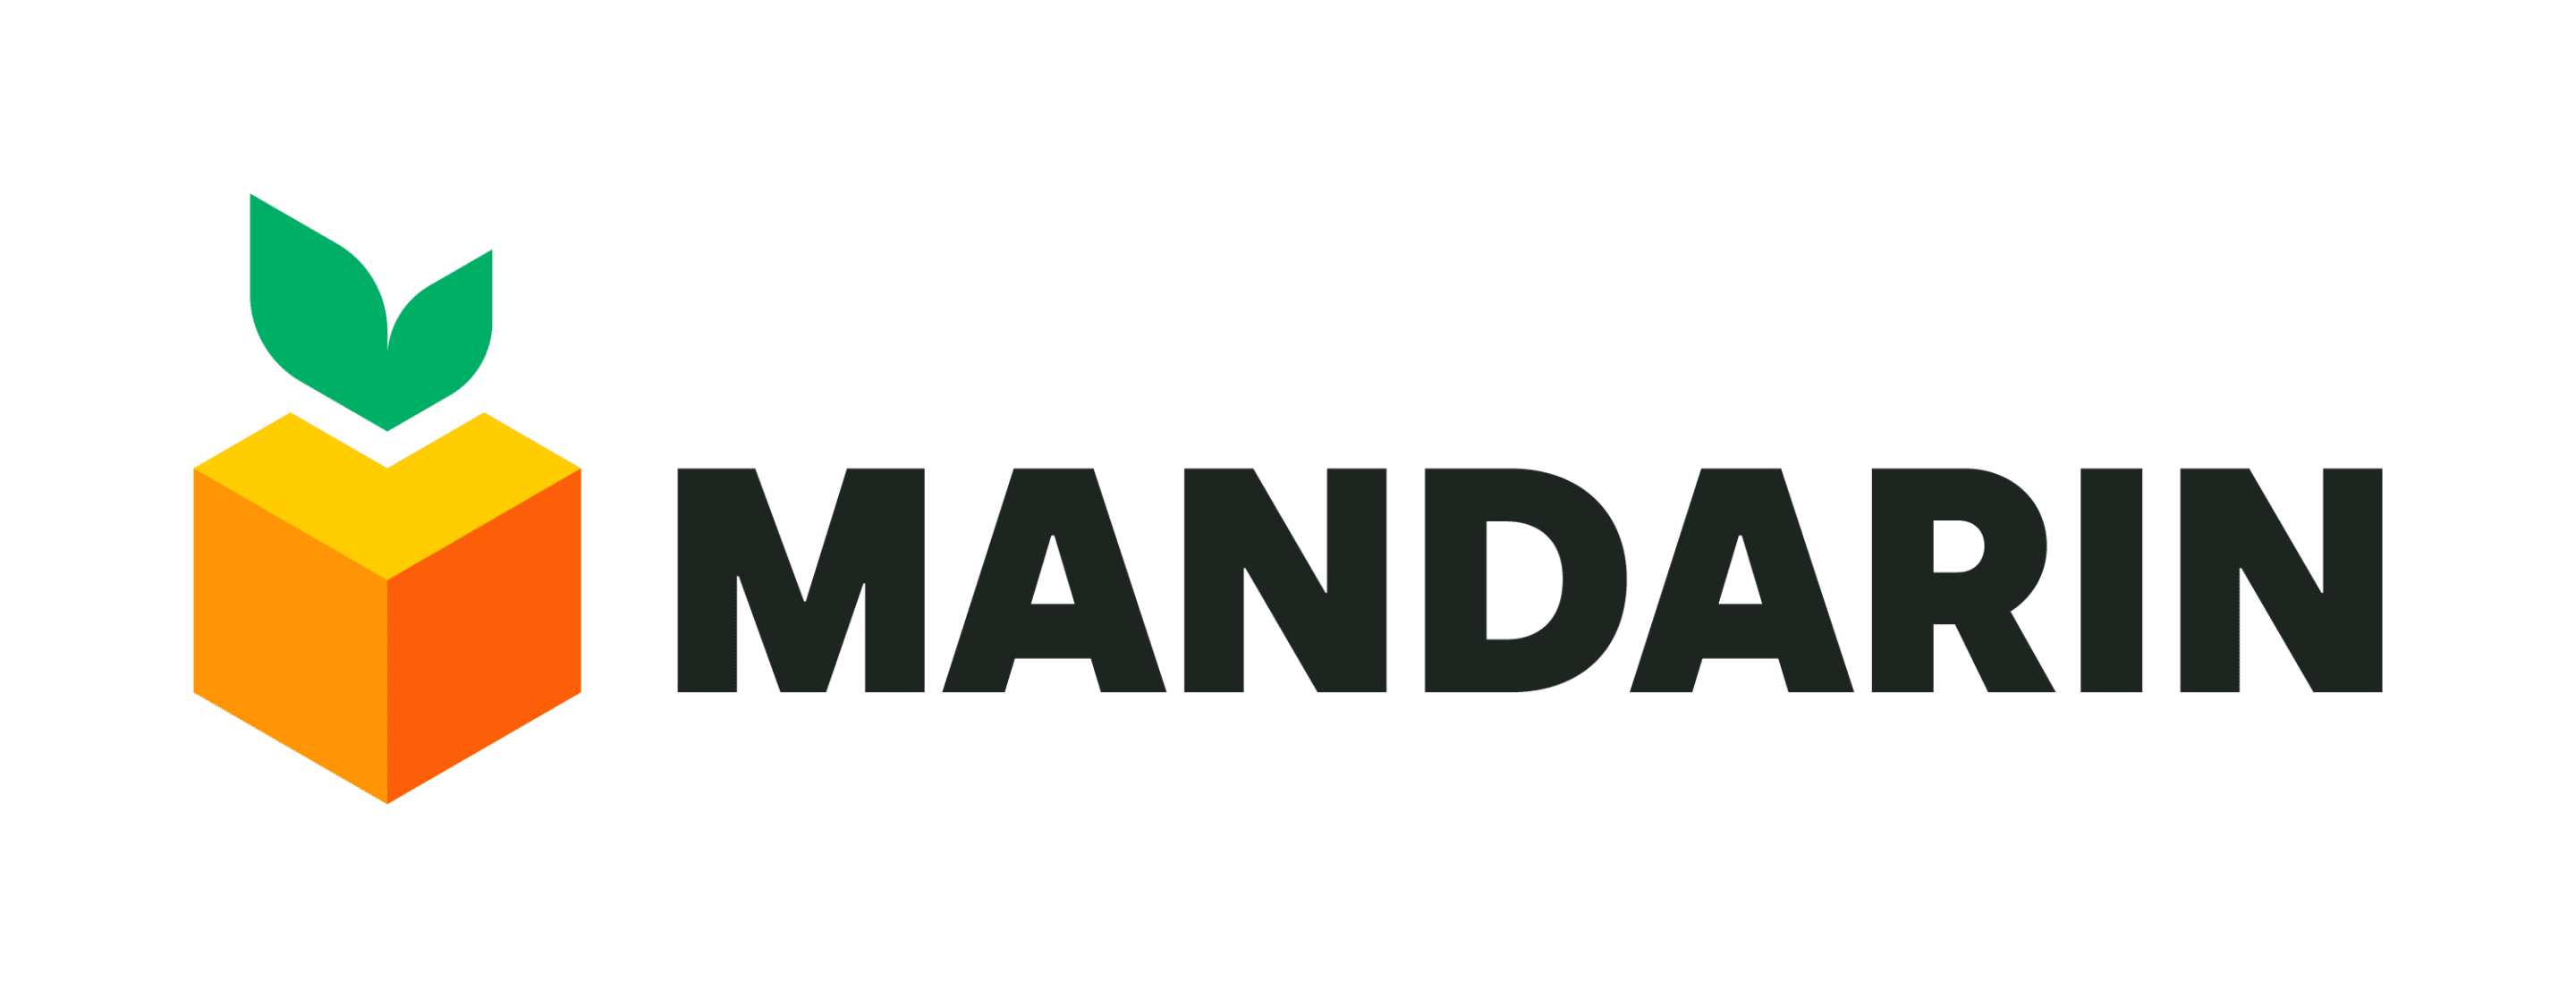 MANDARINmarketing logo<br />
